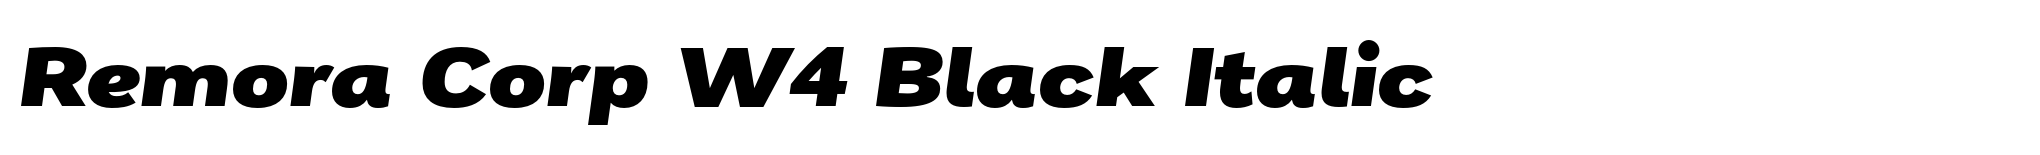 Remora Corp W4 Black Italic image